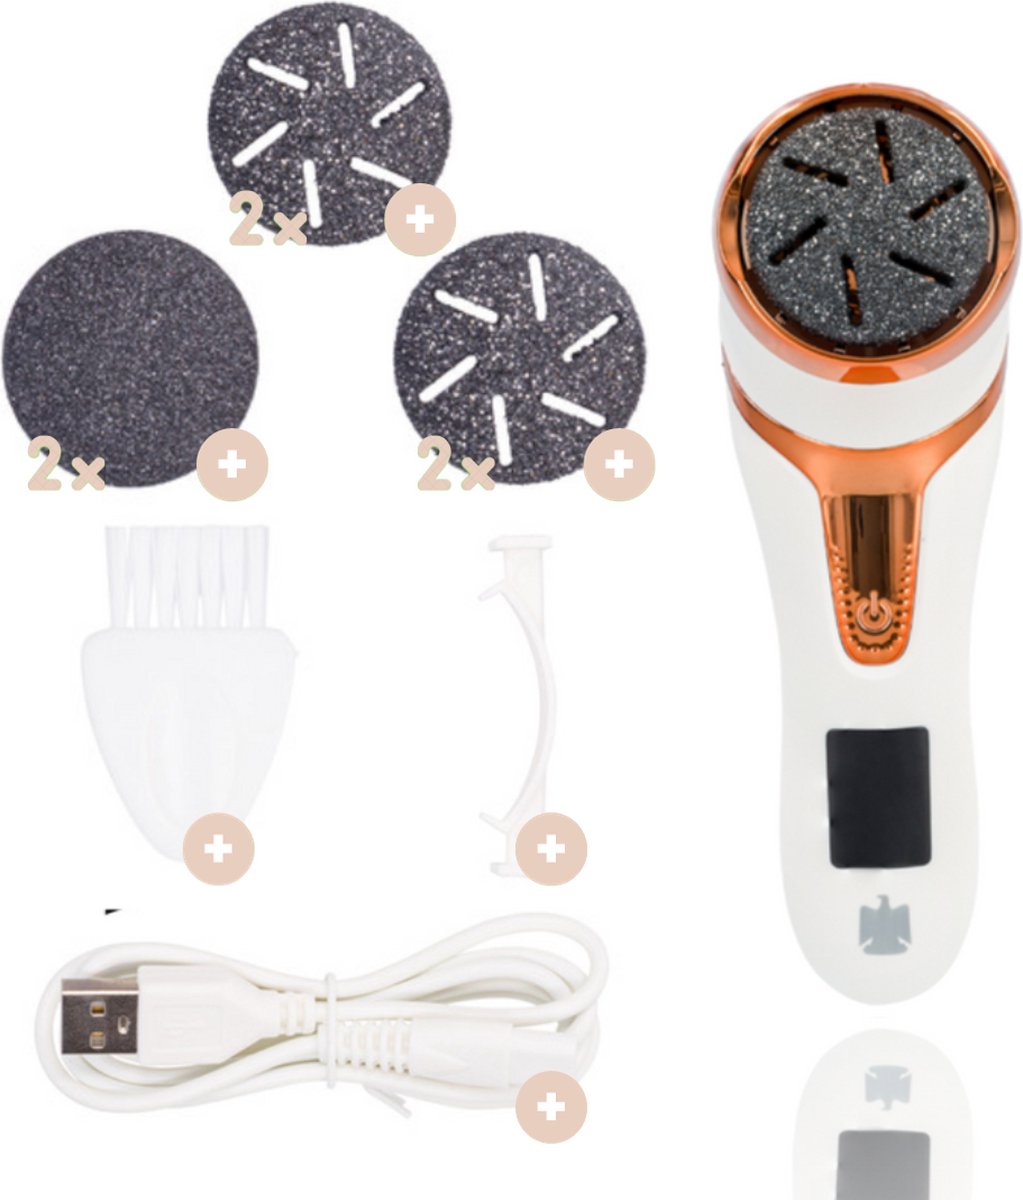 El Masri® eeltverwijderaars – Levenslange garantie - USB oplaadbaar - elektrische eeltverwijderaar – Voetvijl – waterbestendig - Wit